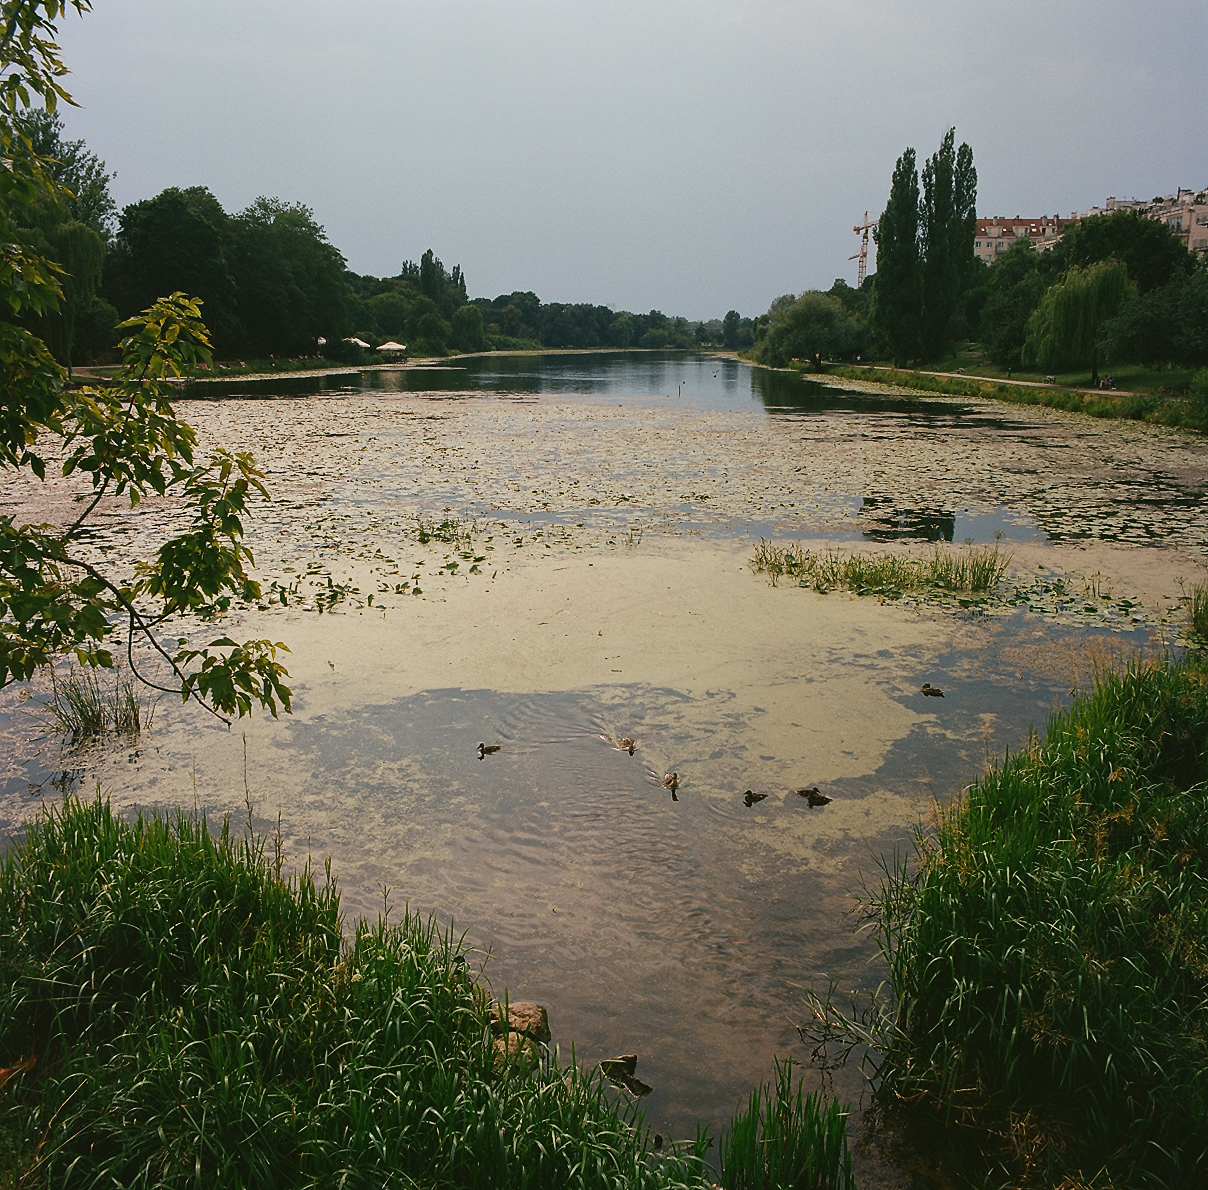 Jezioro Kamionkowskie, jedno z najzdrowszych siedlisk roślinności szuwarowo-trzcinowej i wodnej w Warszawie. Warto stąd pobrać trochę wody podczas zakładania sadzawki, by z nią przenieść mikrokosmos stworzeń, gwarantów ogrodniczego sukcesu.